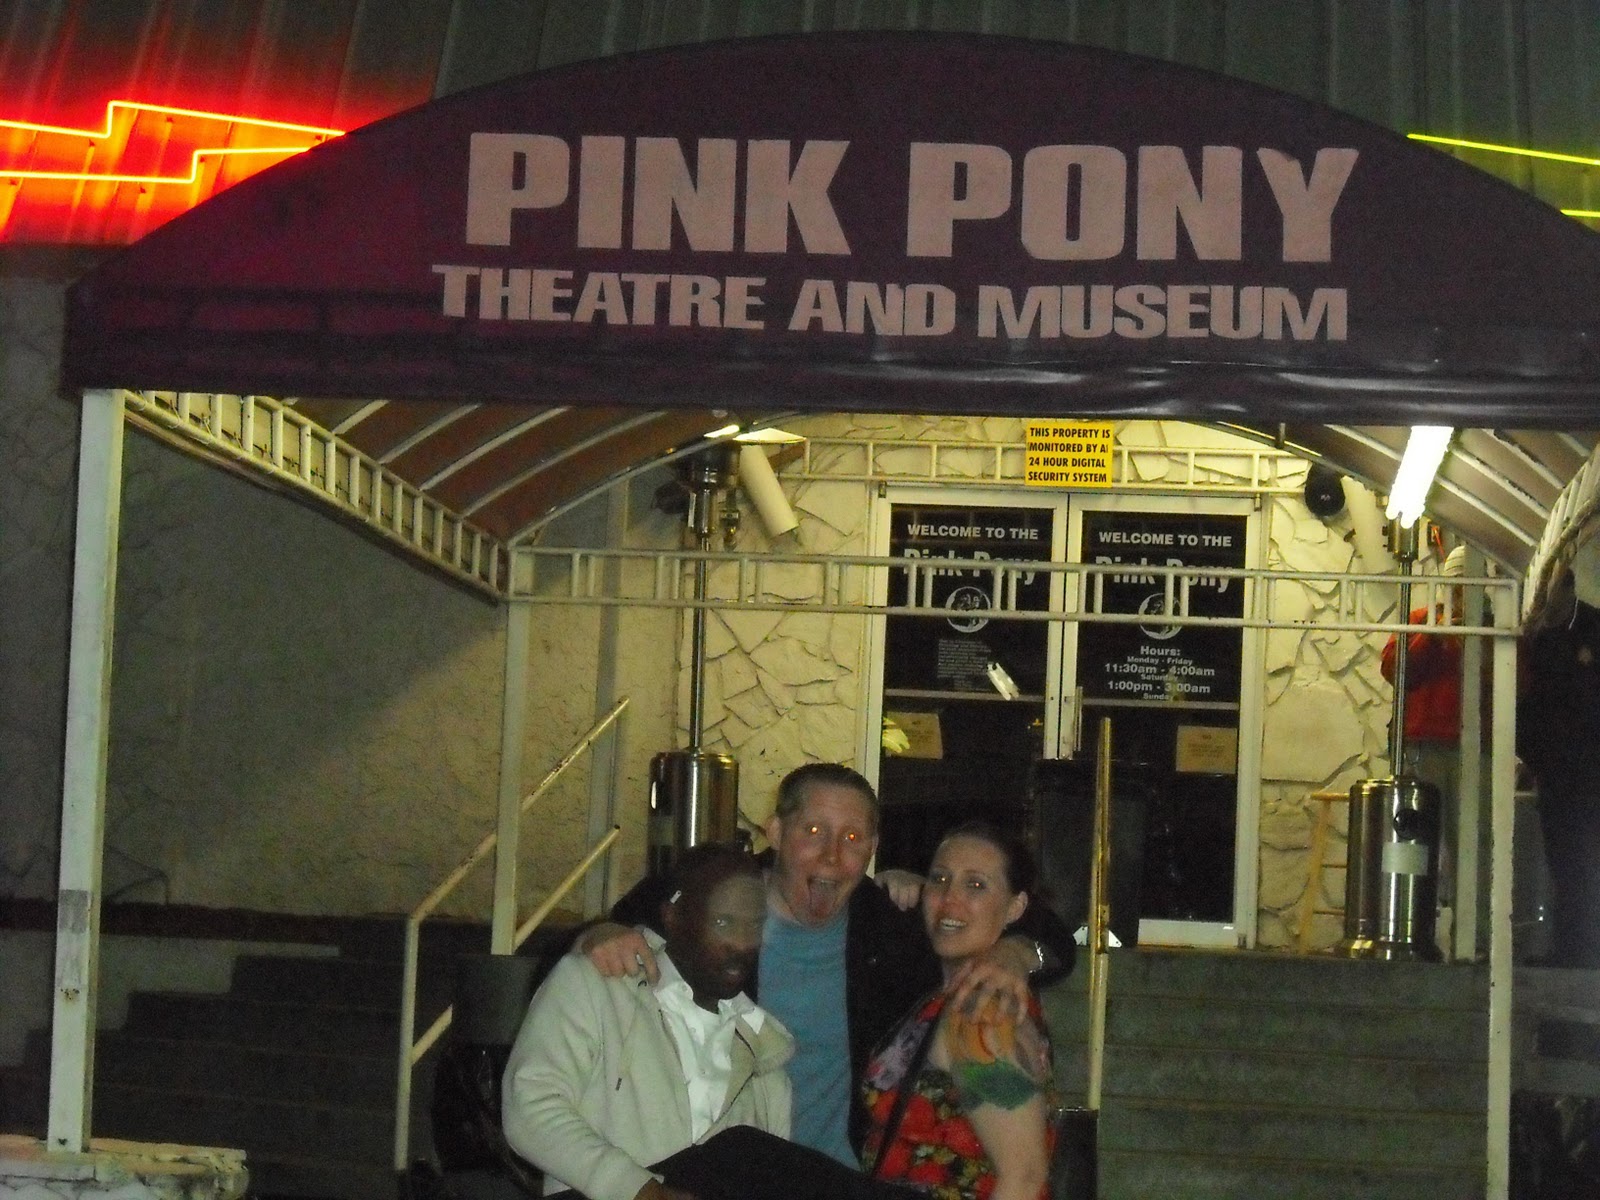 http://3.bp.blogspot.com/_-OGSqvDf8MU/TJ1Xy8PGHpI/AAAAAAAAAUE/XbsELfdBBWs/s1600/09-24-10+Pink+Pony.JPG